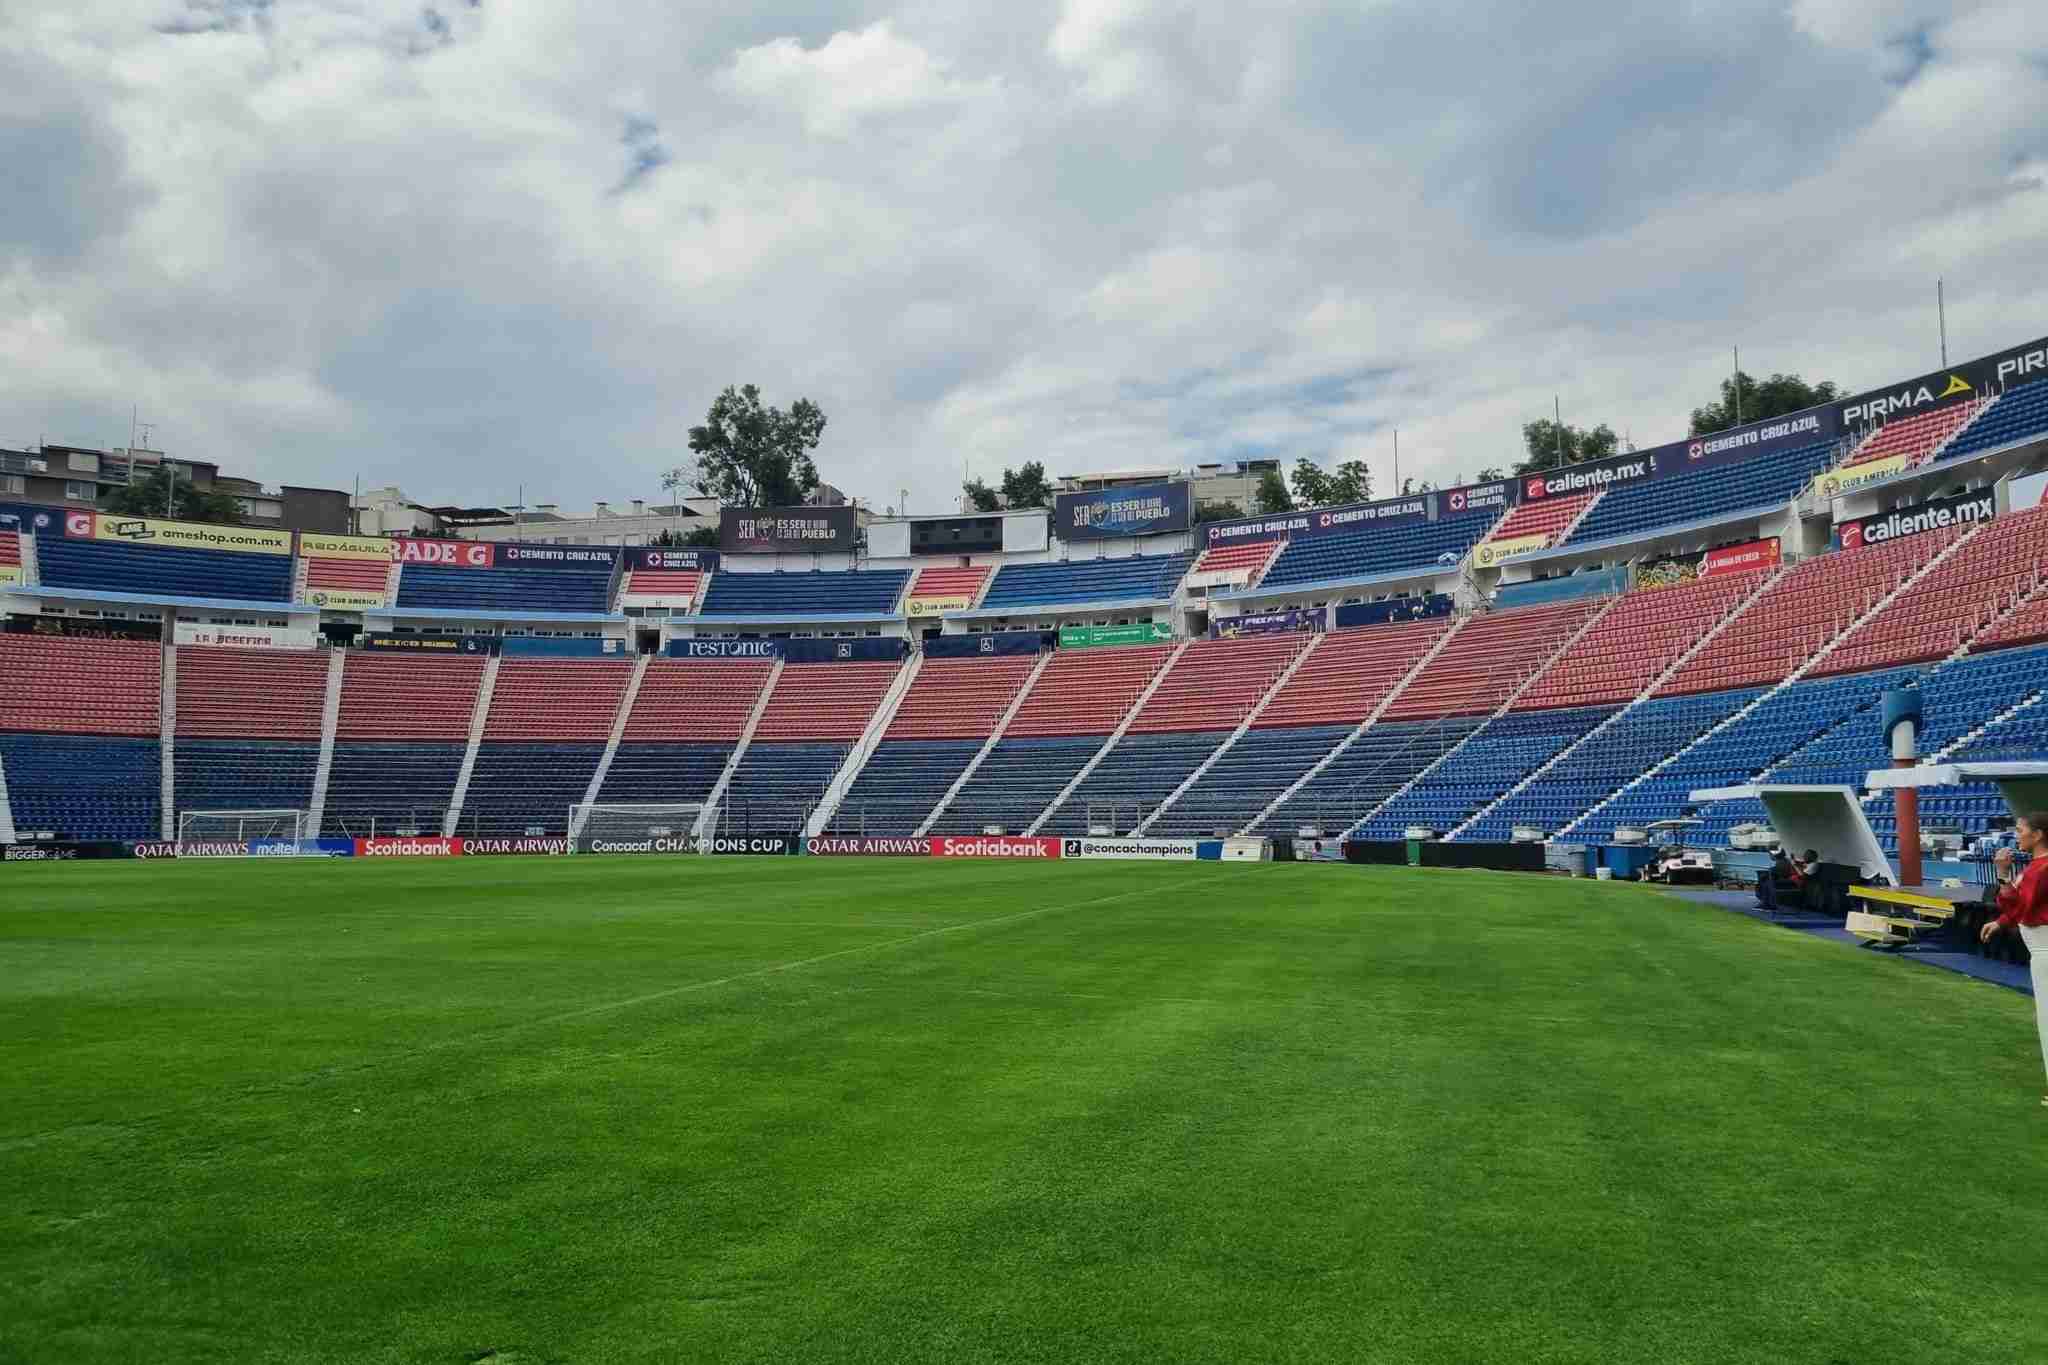 El estadio luciendo publicidad del América. Foto: Facebook (Nación Azul)